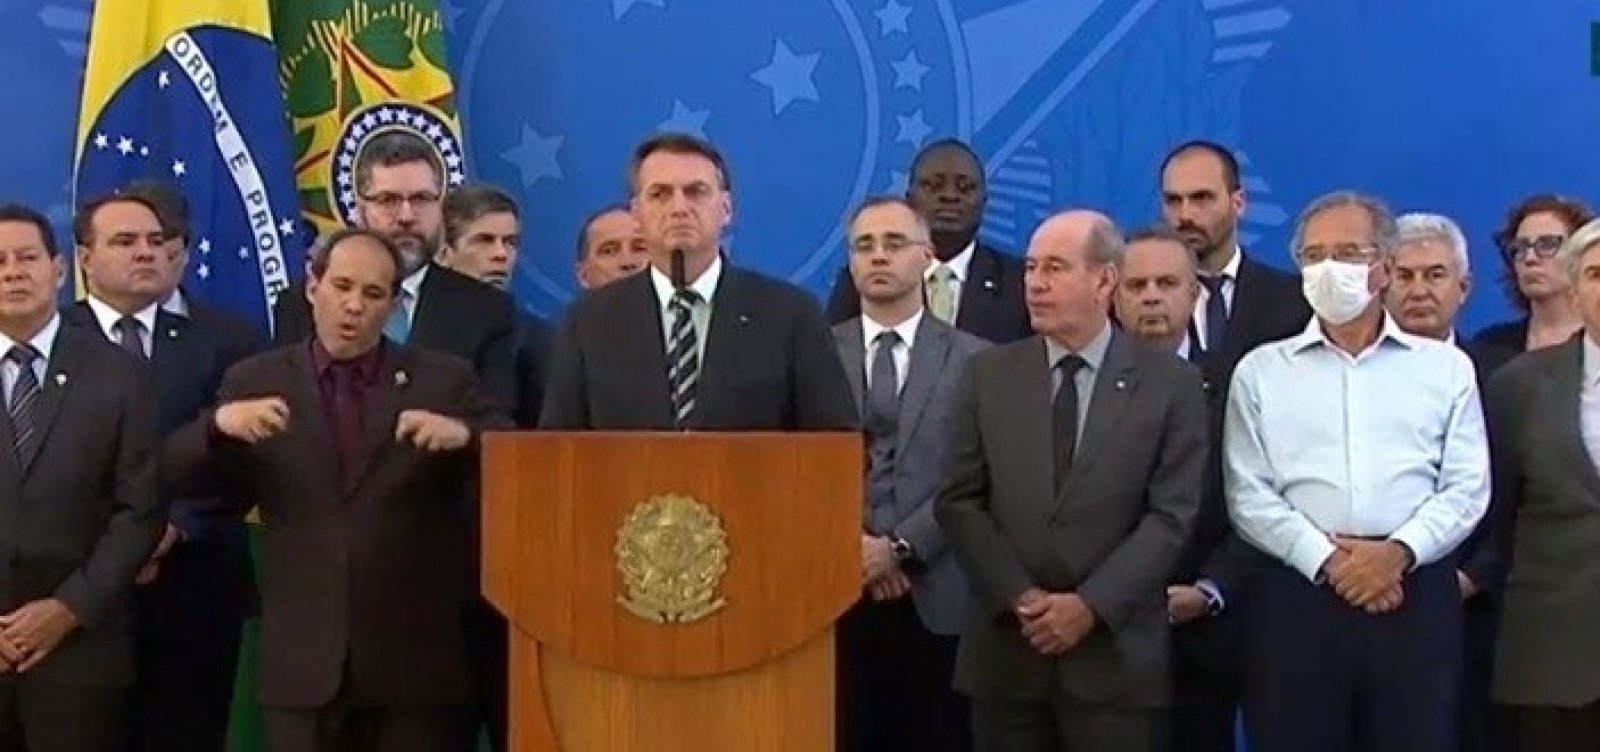 Moro teria pedido para trocar Valeixo depois de ser indicado ao STF, diz Bolsonaro